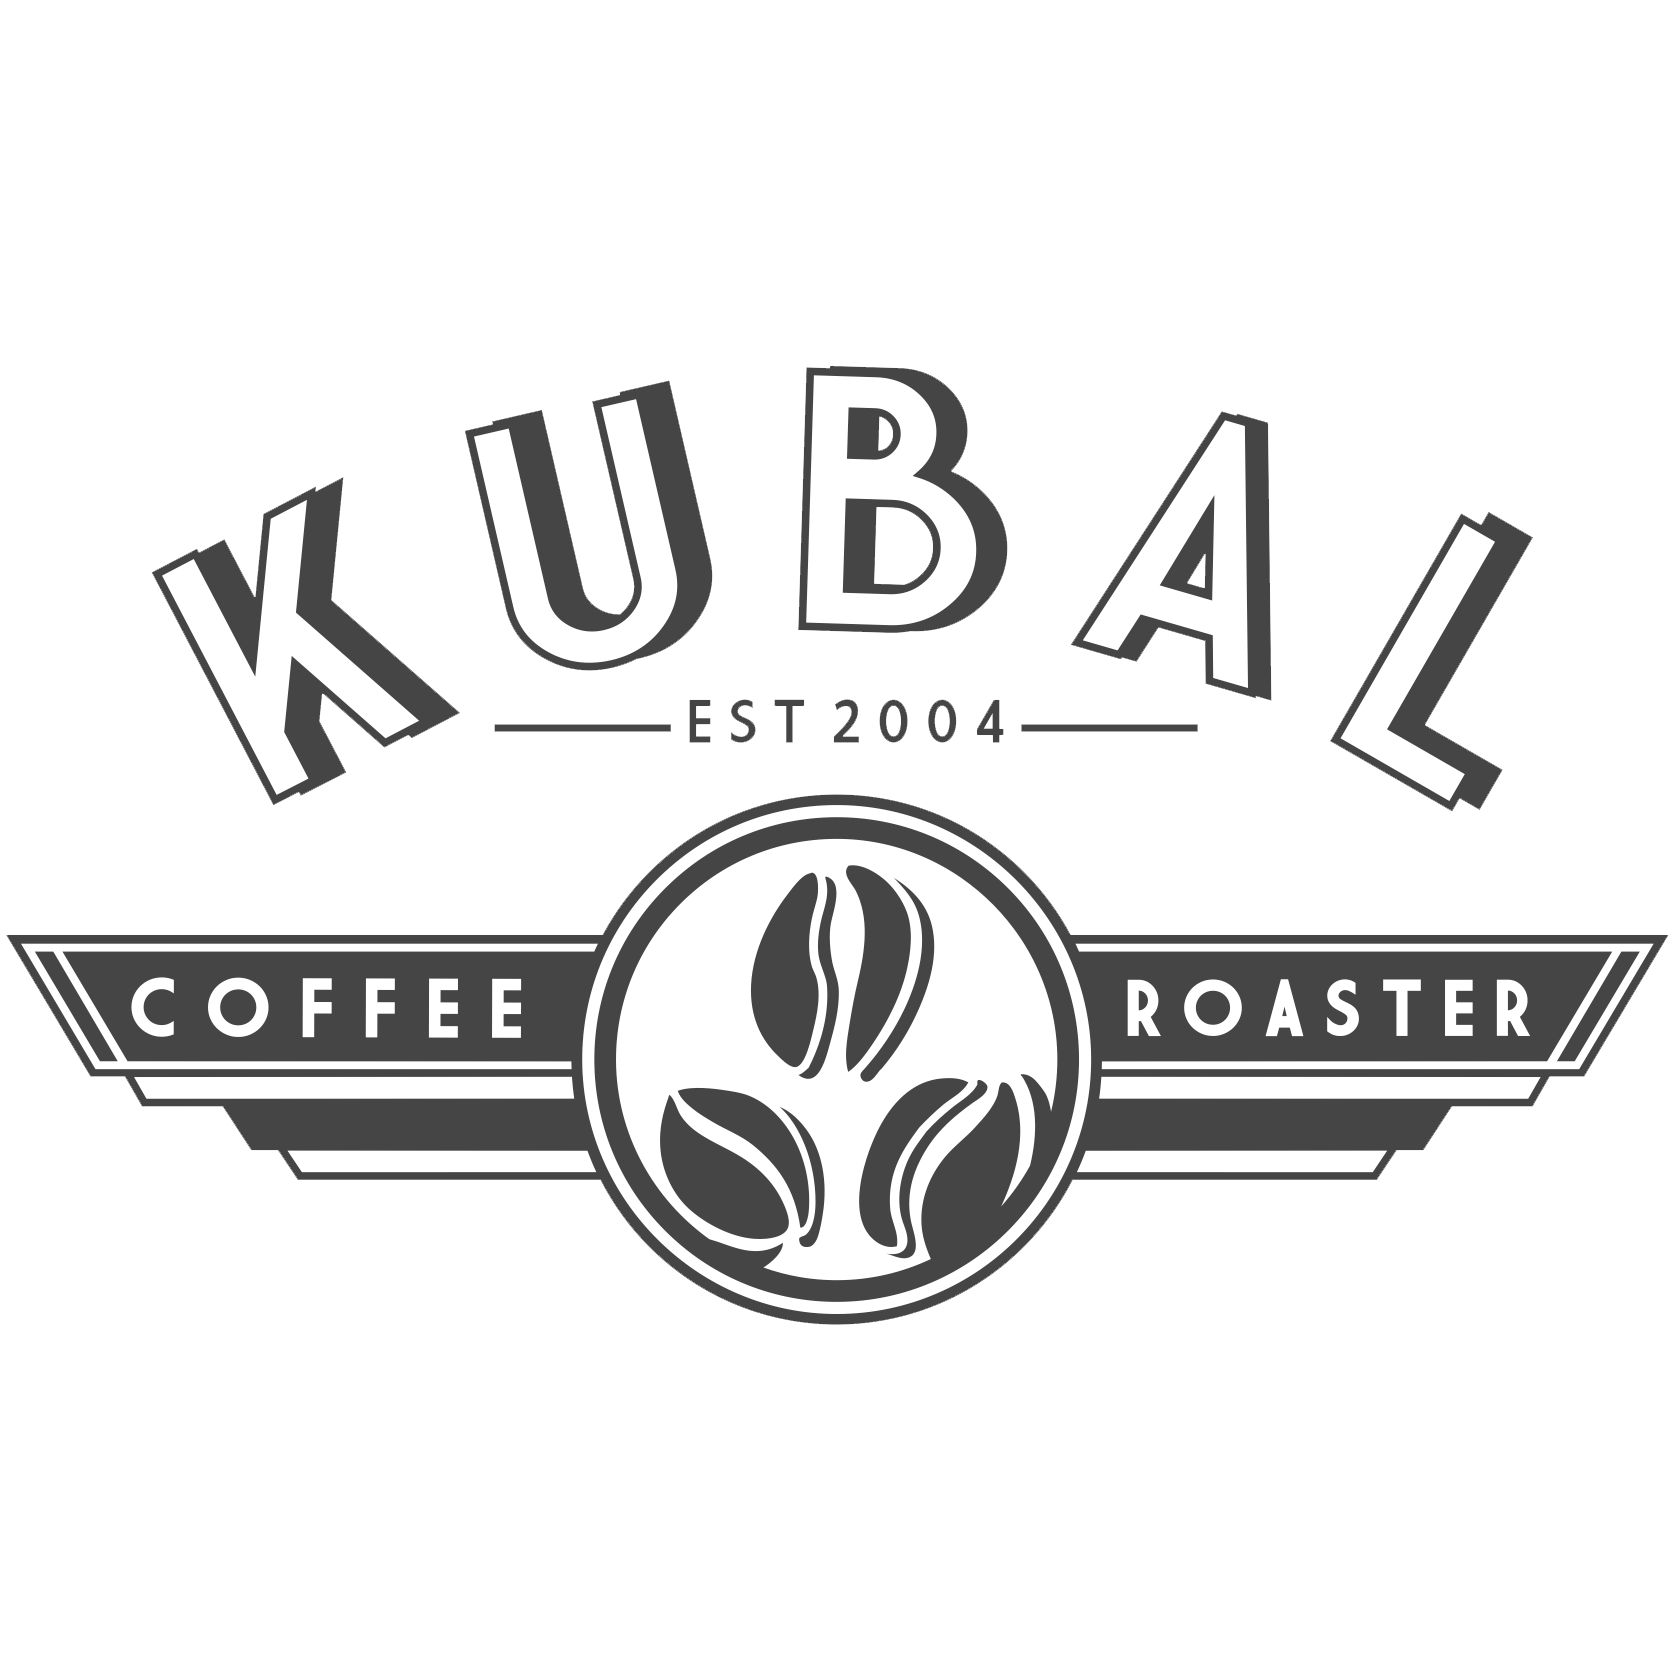 Kubal Coffee Roaster